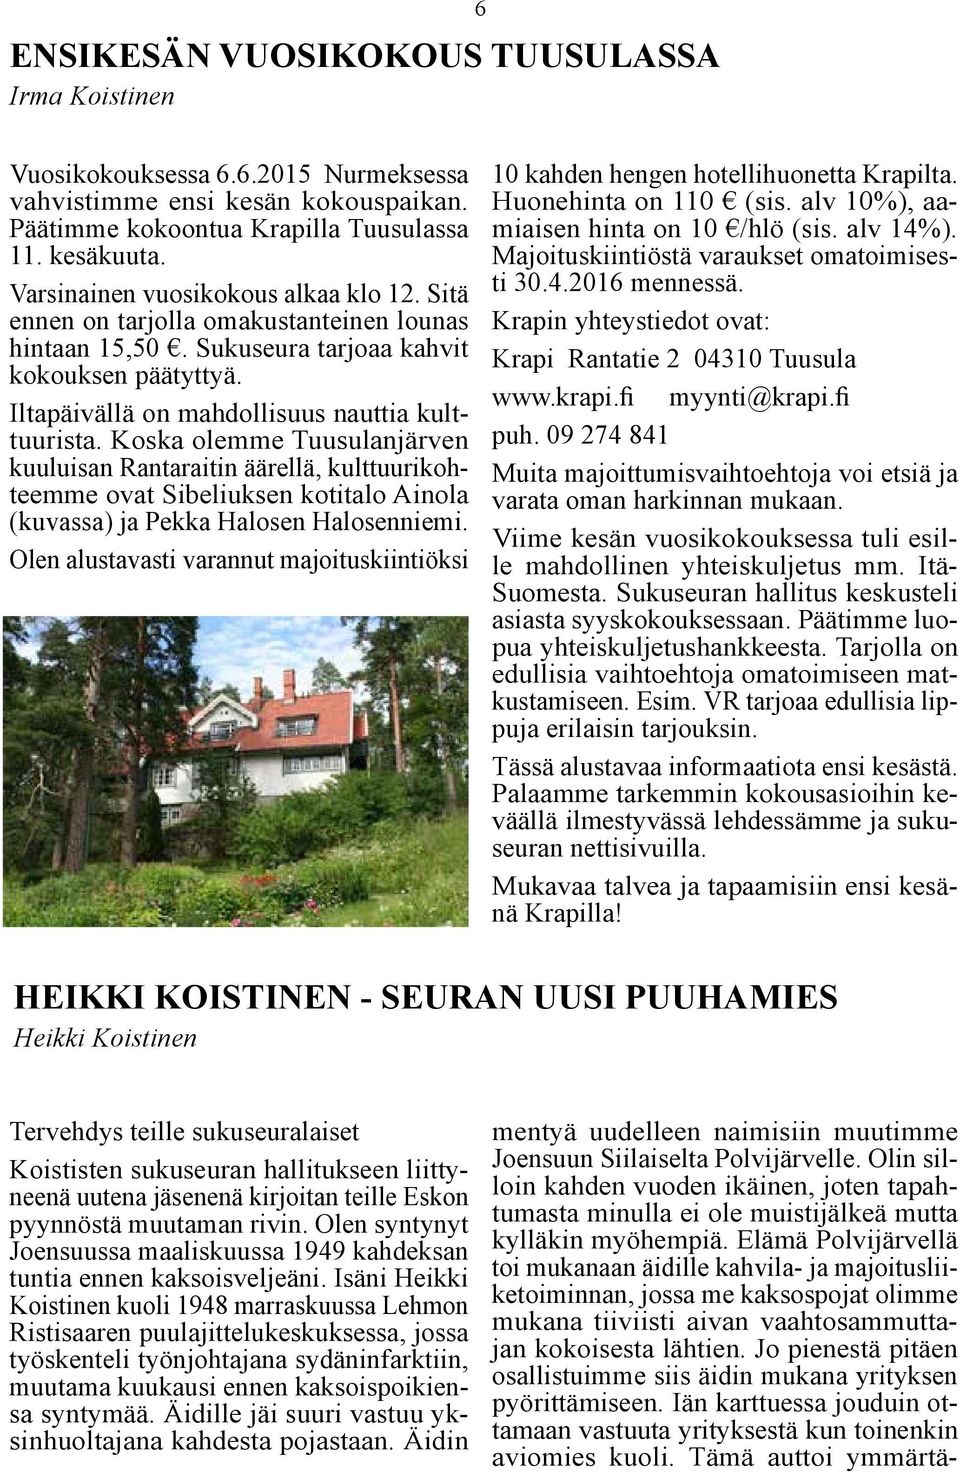 Koska olemme Tuusulanjärven kuuluisan Rantaraitin äärellä, kulttuurikohteemme ovat Sibeliuksen kotitalo Ainola (kuvassa) ja Pekka Halosen Halosenniemi.